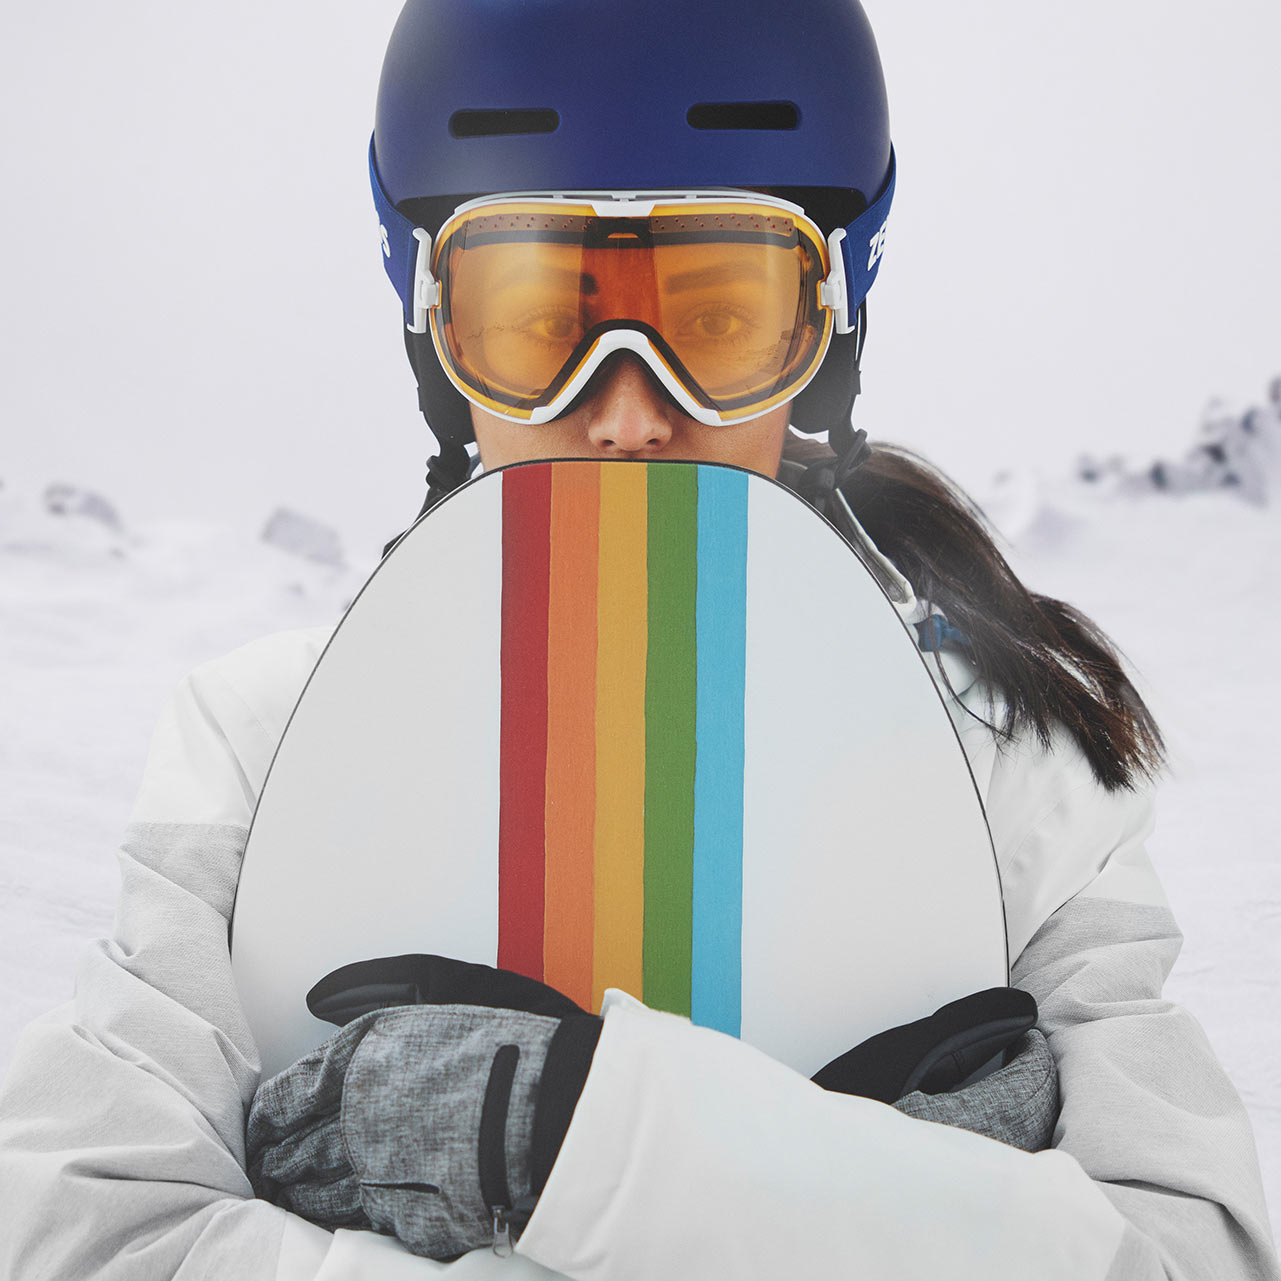 Une femme porte un casque bleu et des lunettes de ski ZEISS à miroir bleu, tenant un snowboard coloré dans sa main droite. Montagnes enneigées en arrière-plan.